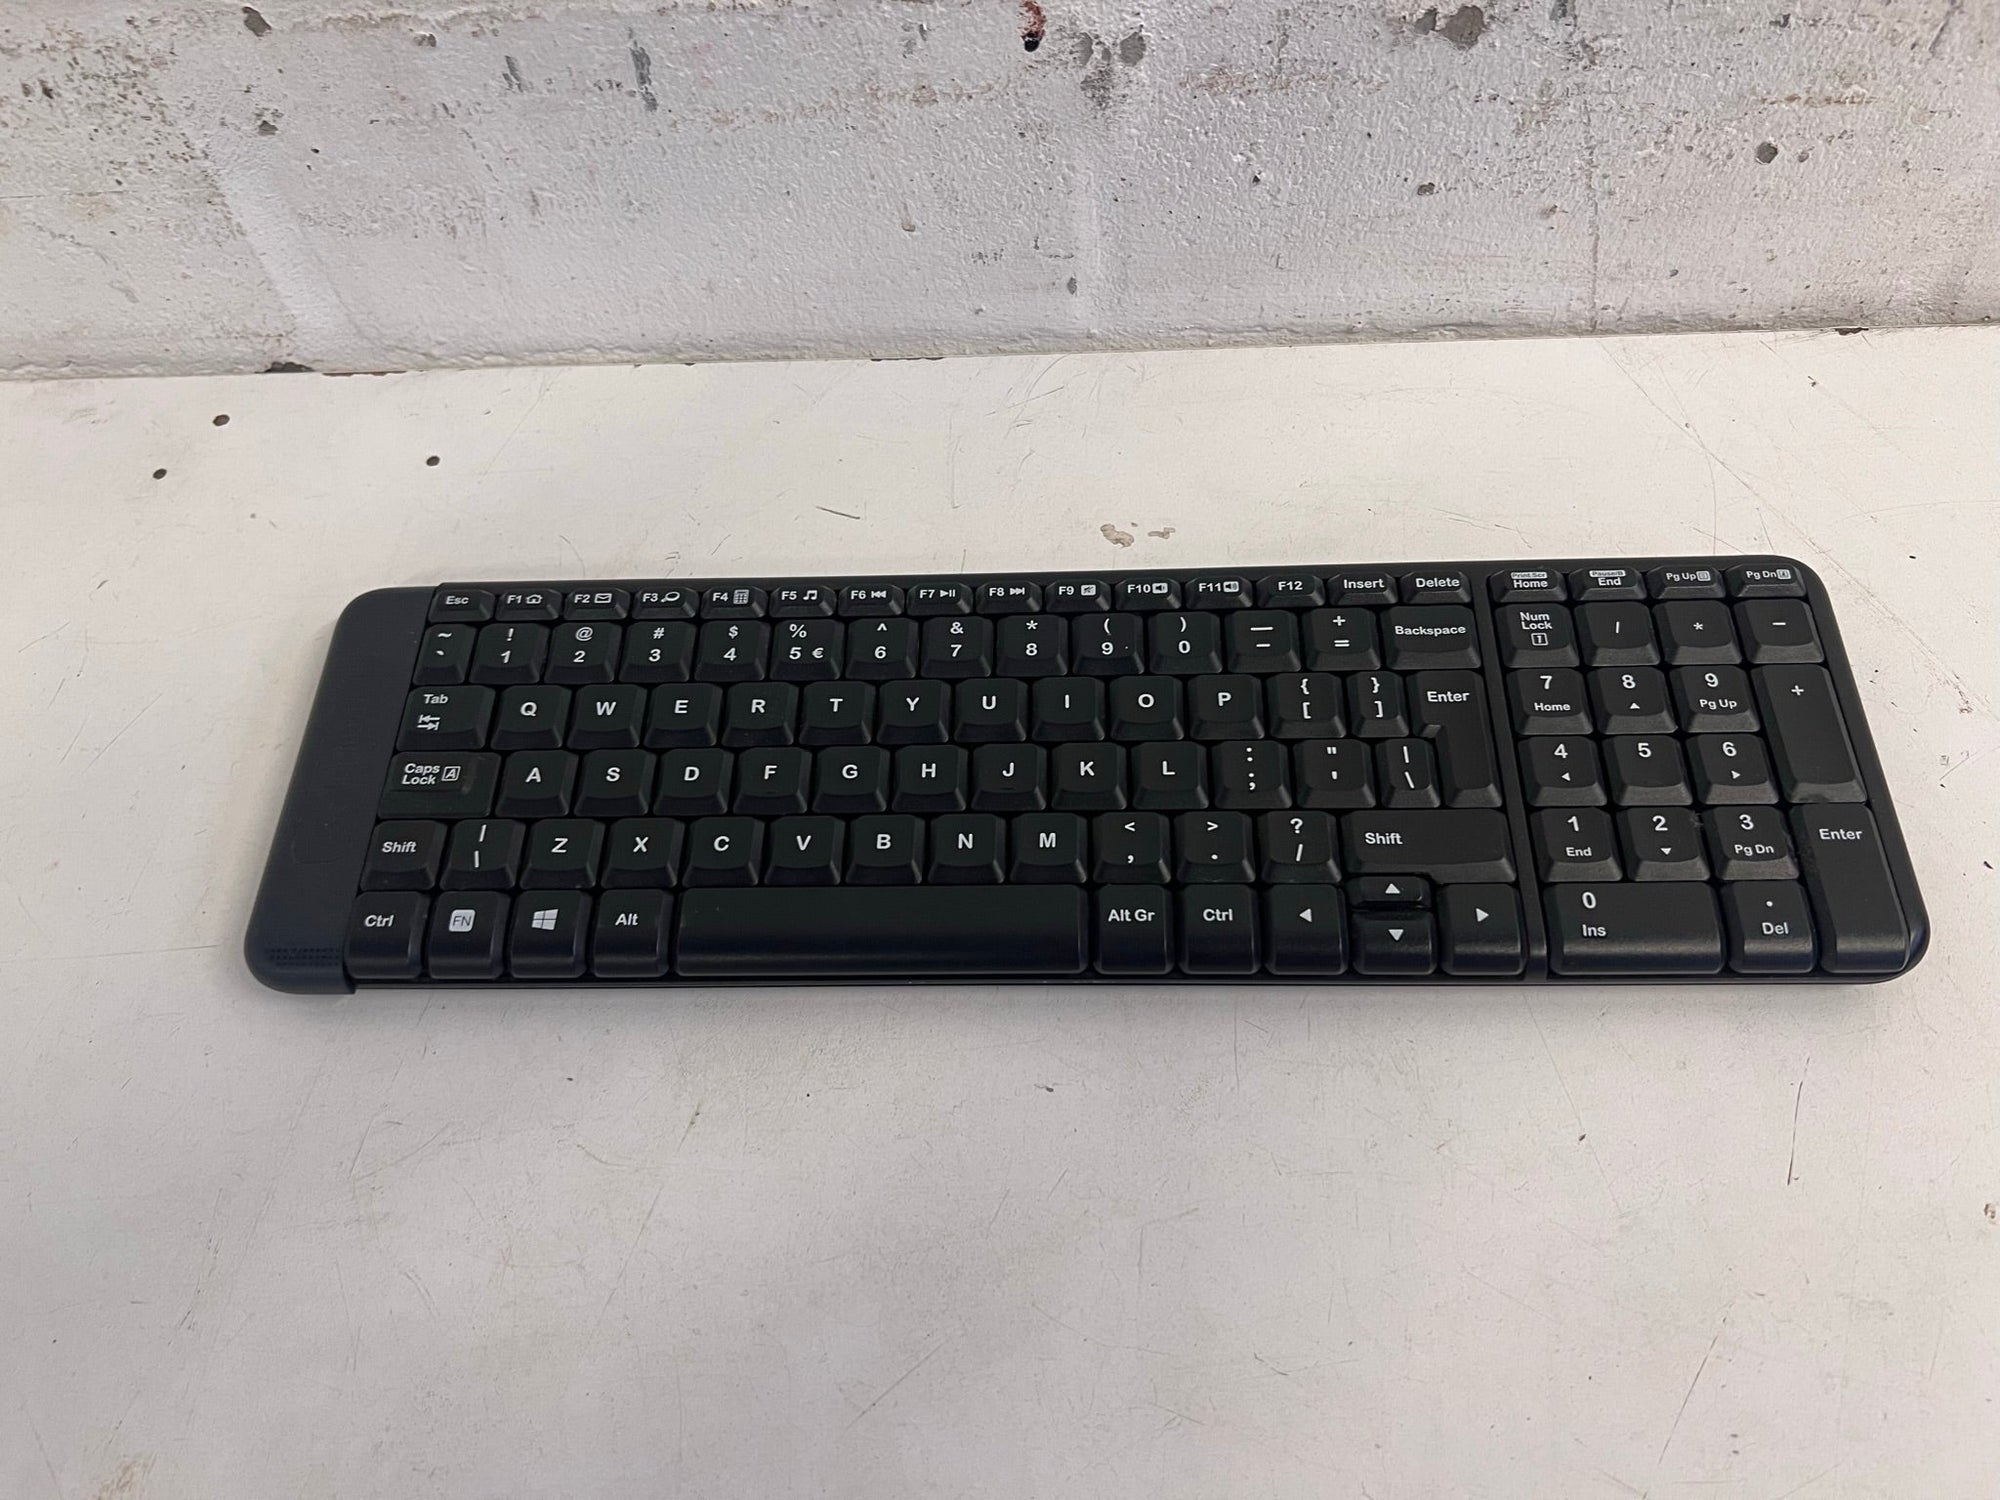 Black Wireless Keyboard